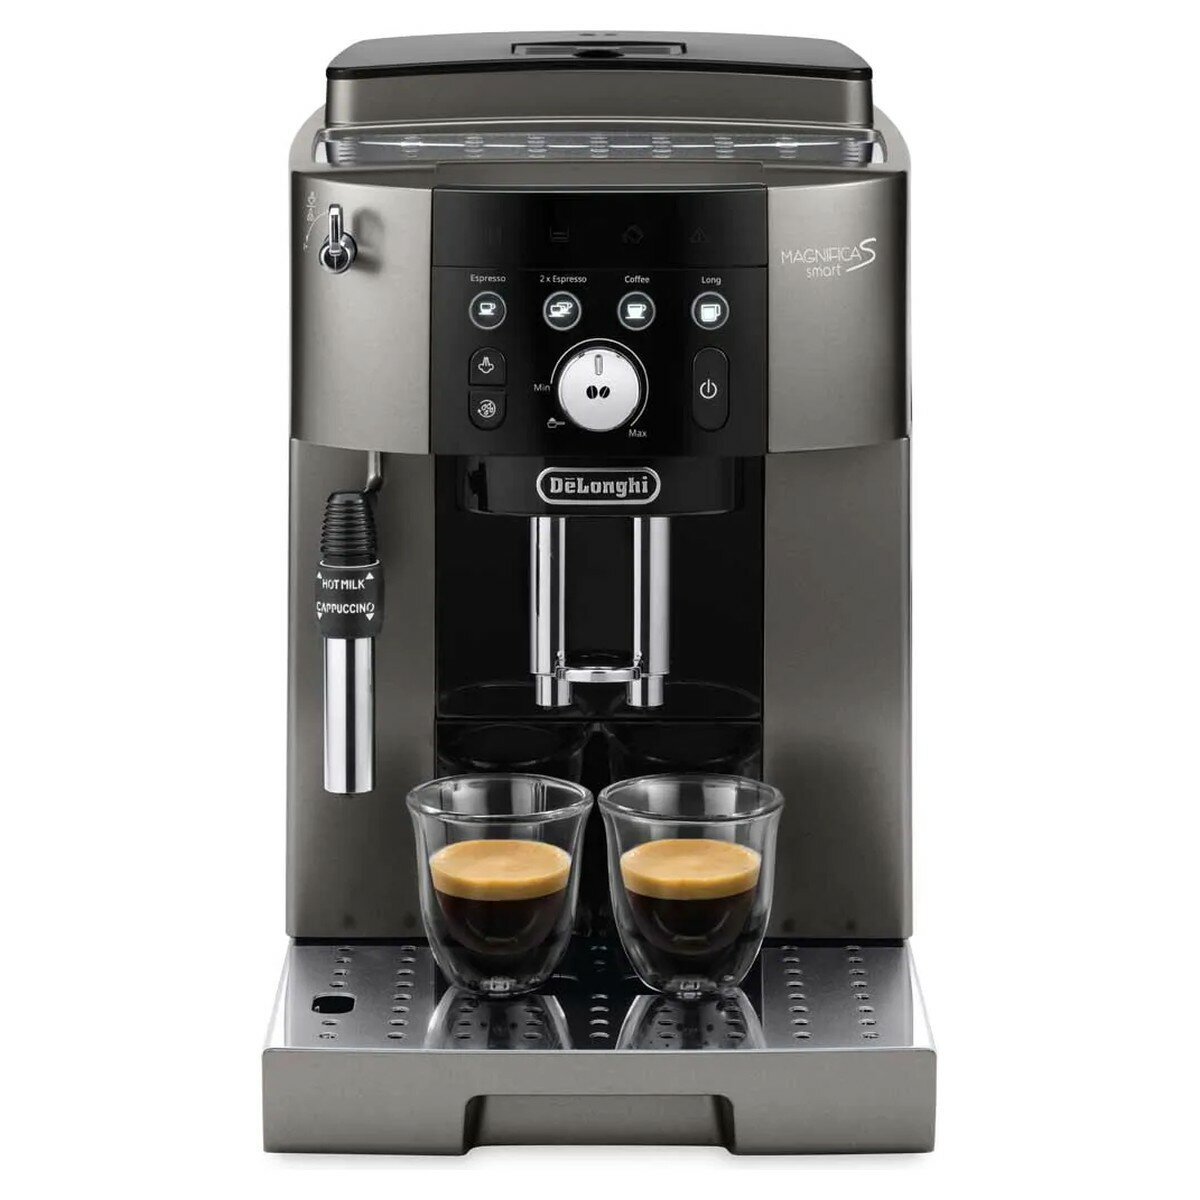 The new De'Longhi Eletta Explore coffee machine is chef's/barista's ki